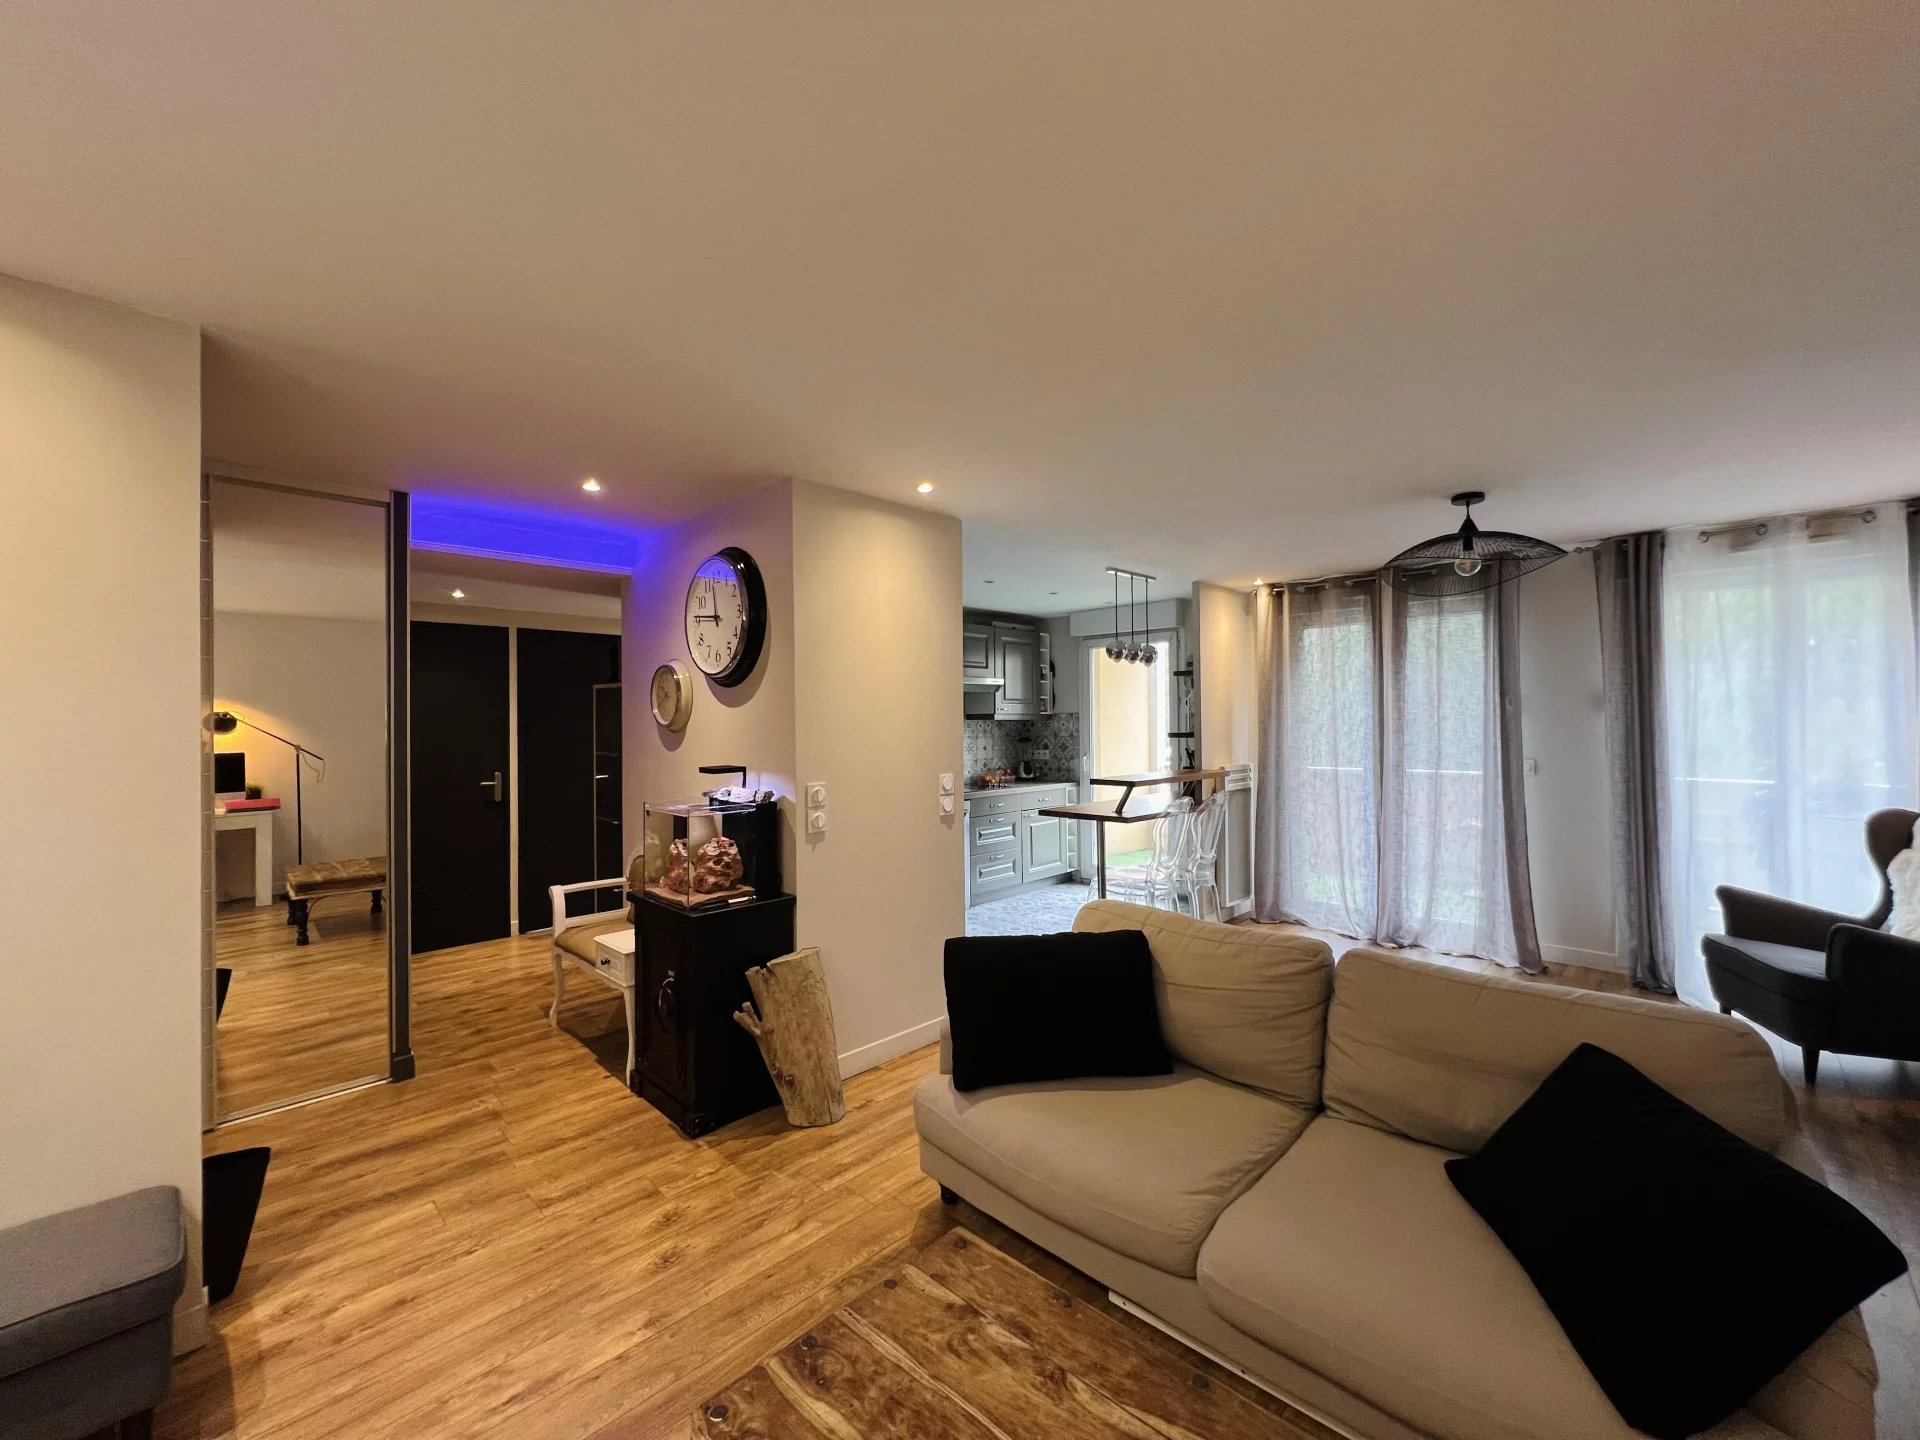 Sale Apartment - Cannes-la-Bocca